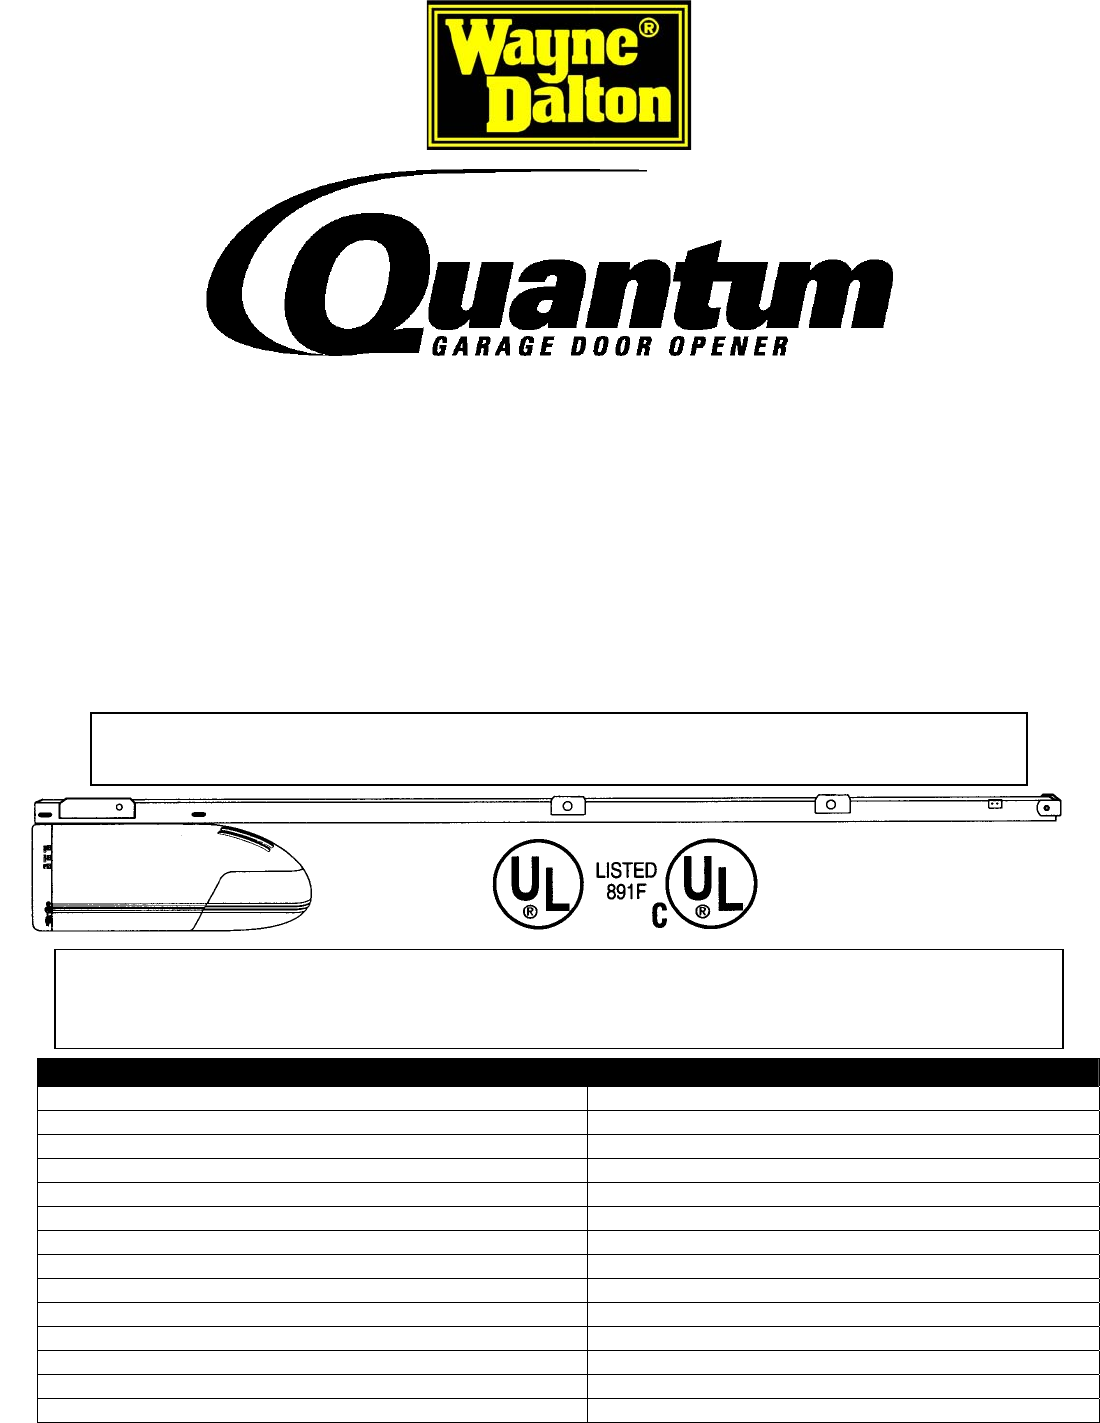 Quantum Garage Door Opener 3214 User Guide Manualsonline Com